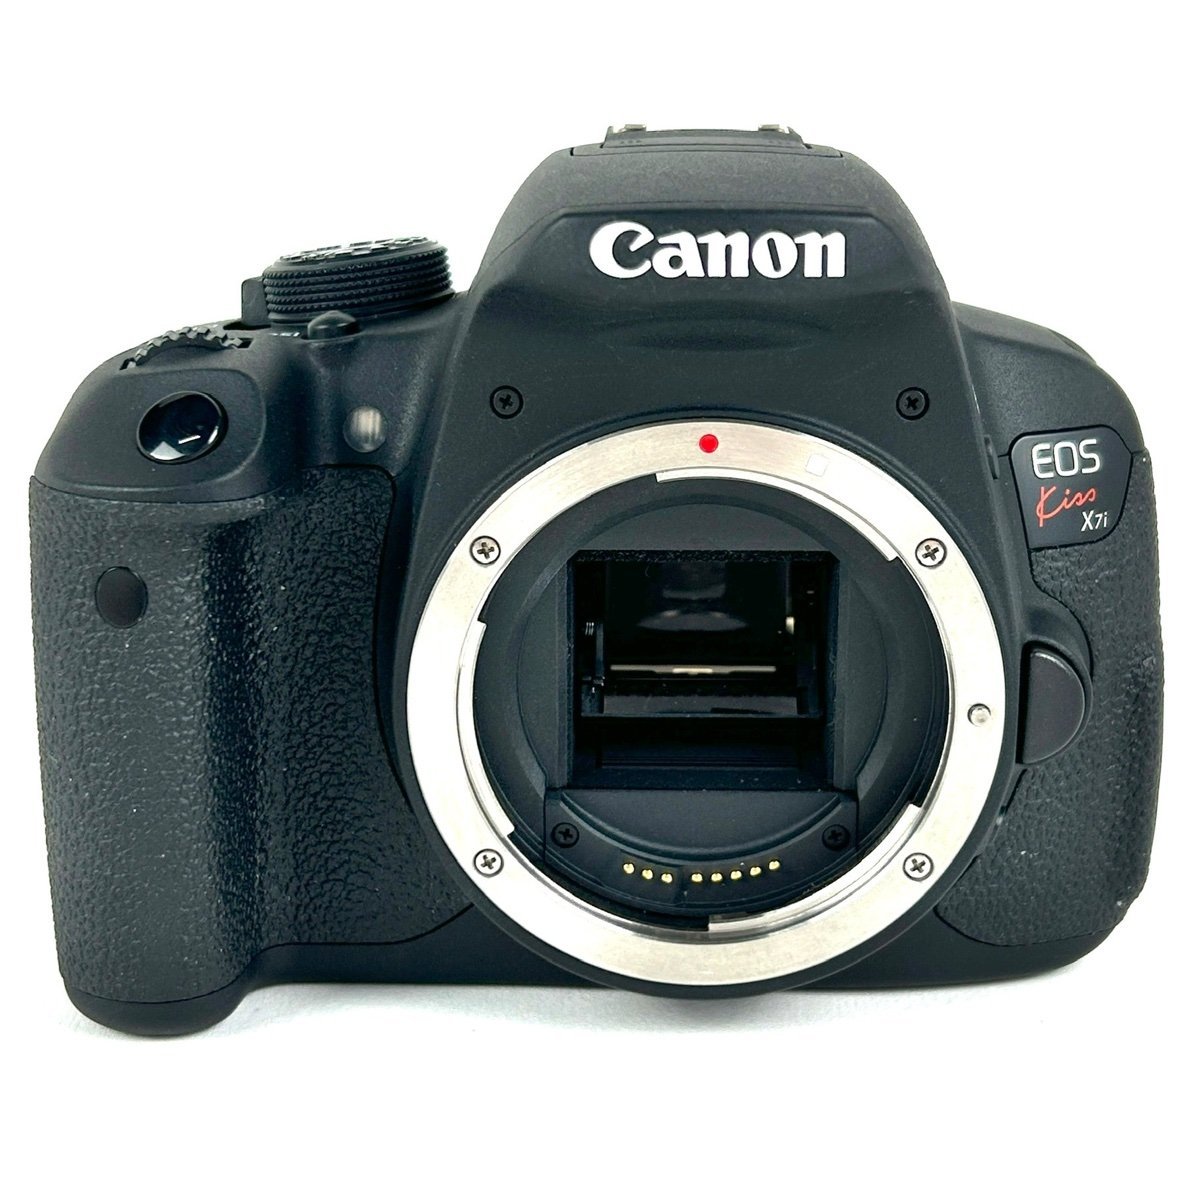 キヤノン Canon EOS Kiss X7i ボディ デジタル 一眼レフカメラ-